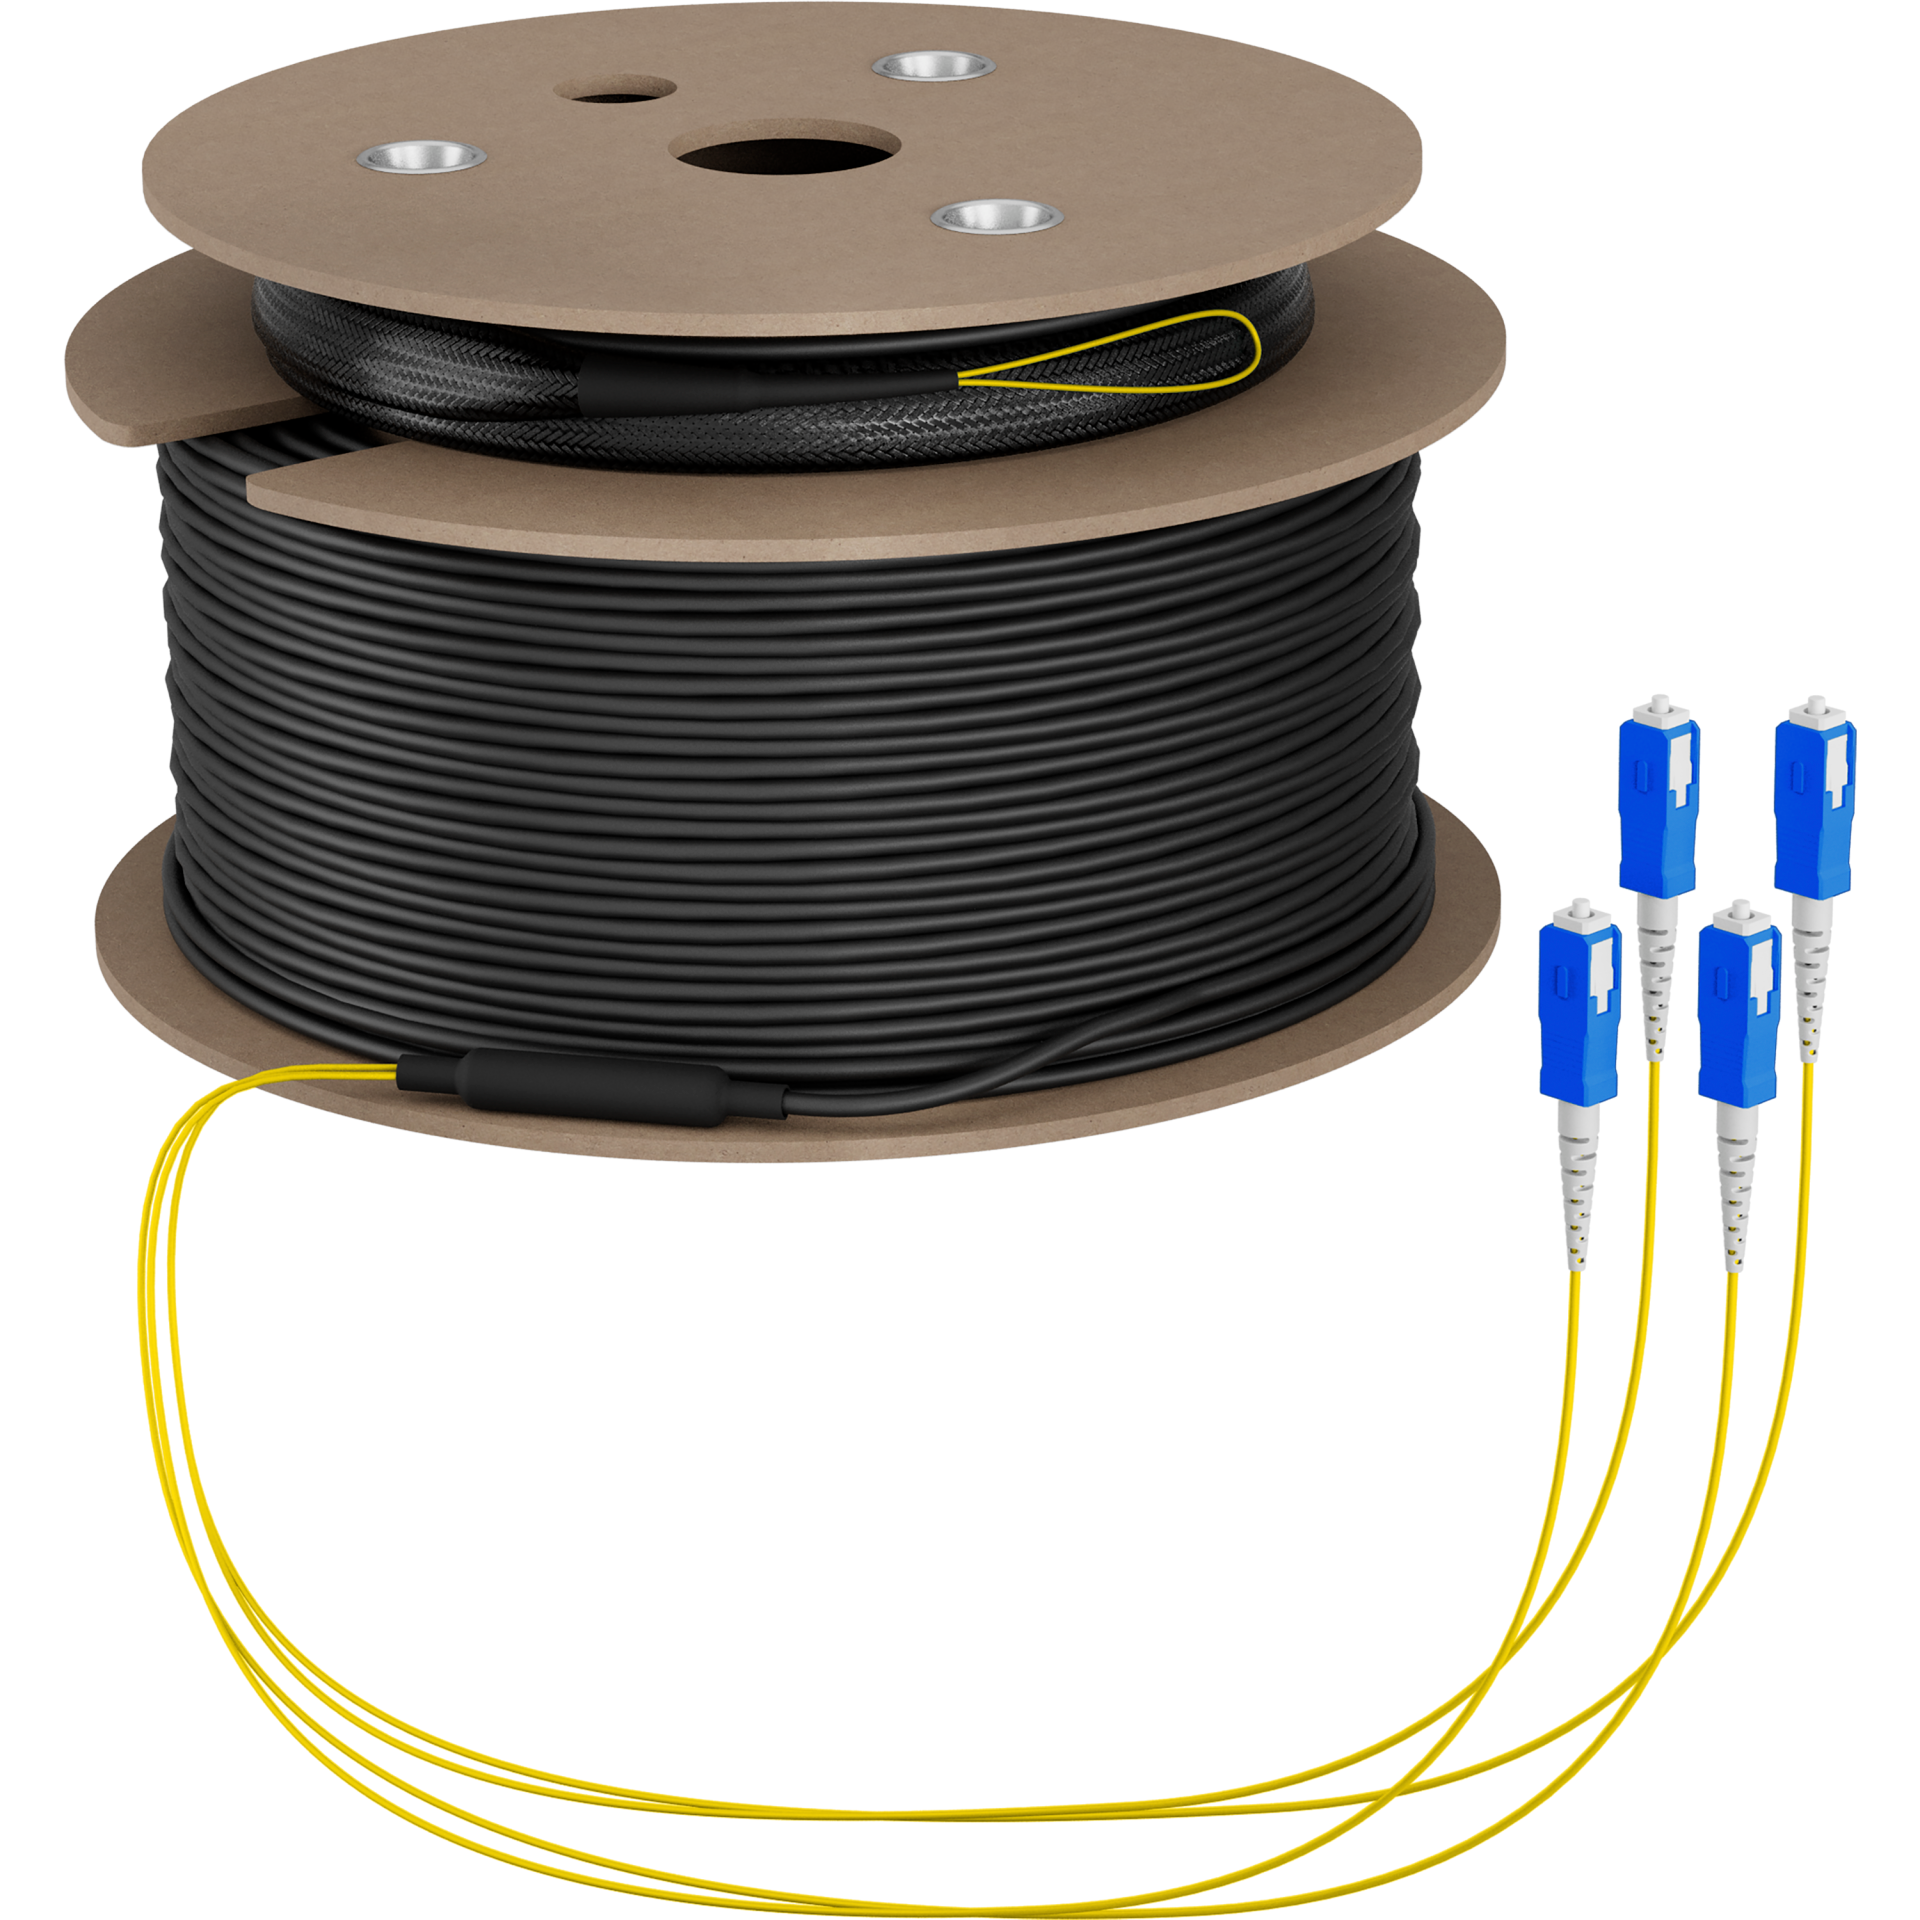 Trunk cable U-DQ(ZN)BH OS2 4E (1x4) SC-SC,100m Dca LSZH